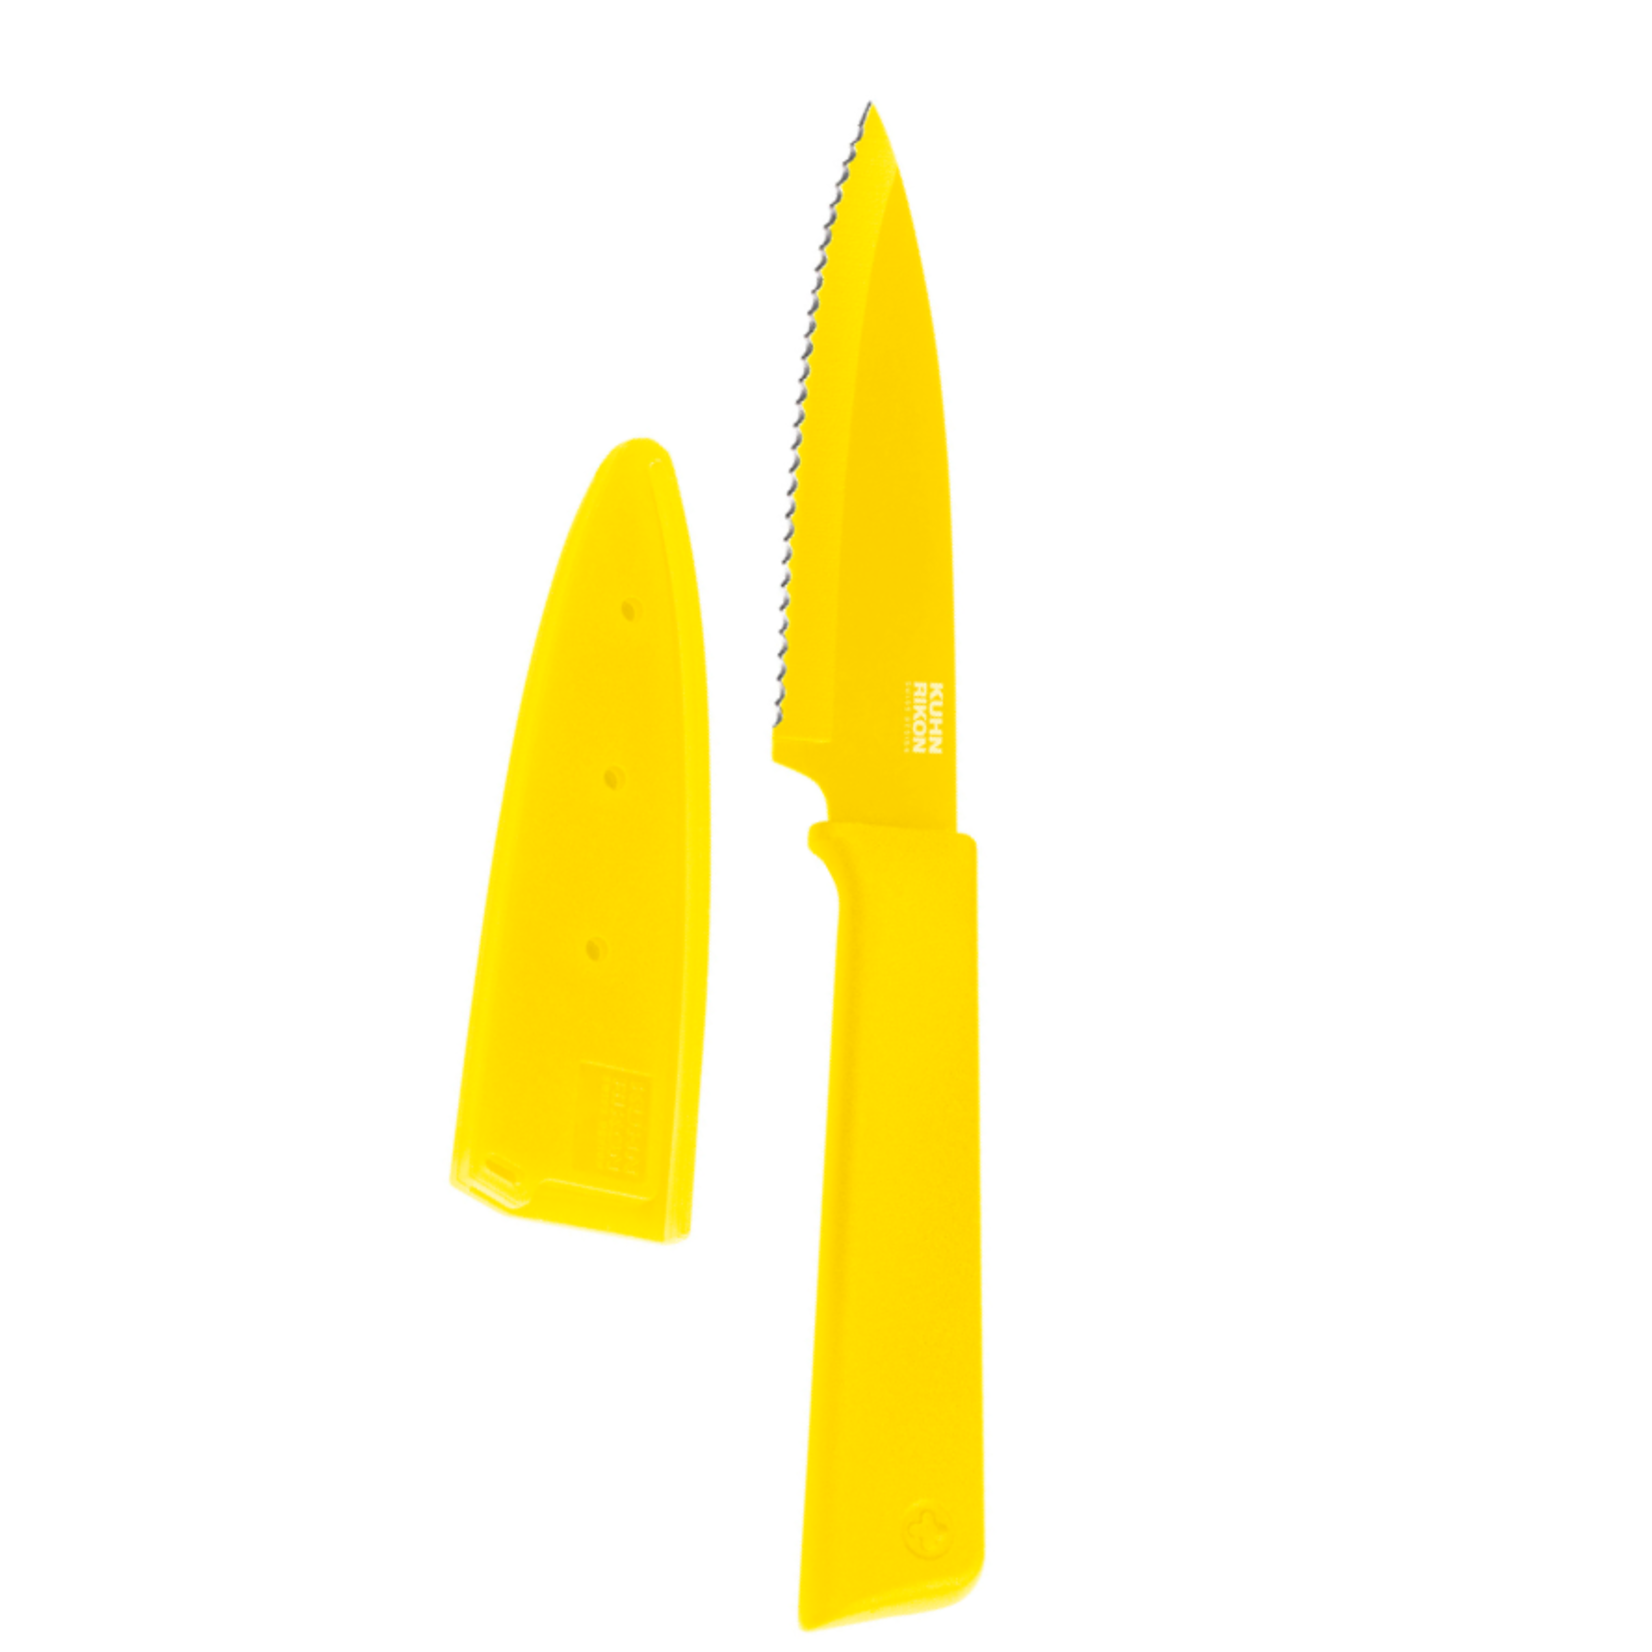 Kuhn Rikon Serrated Paring Knives, Lemon